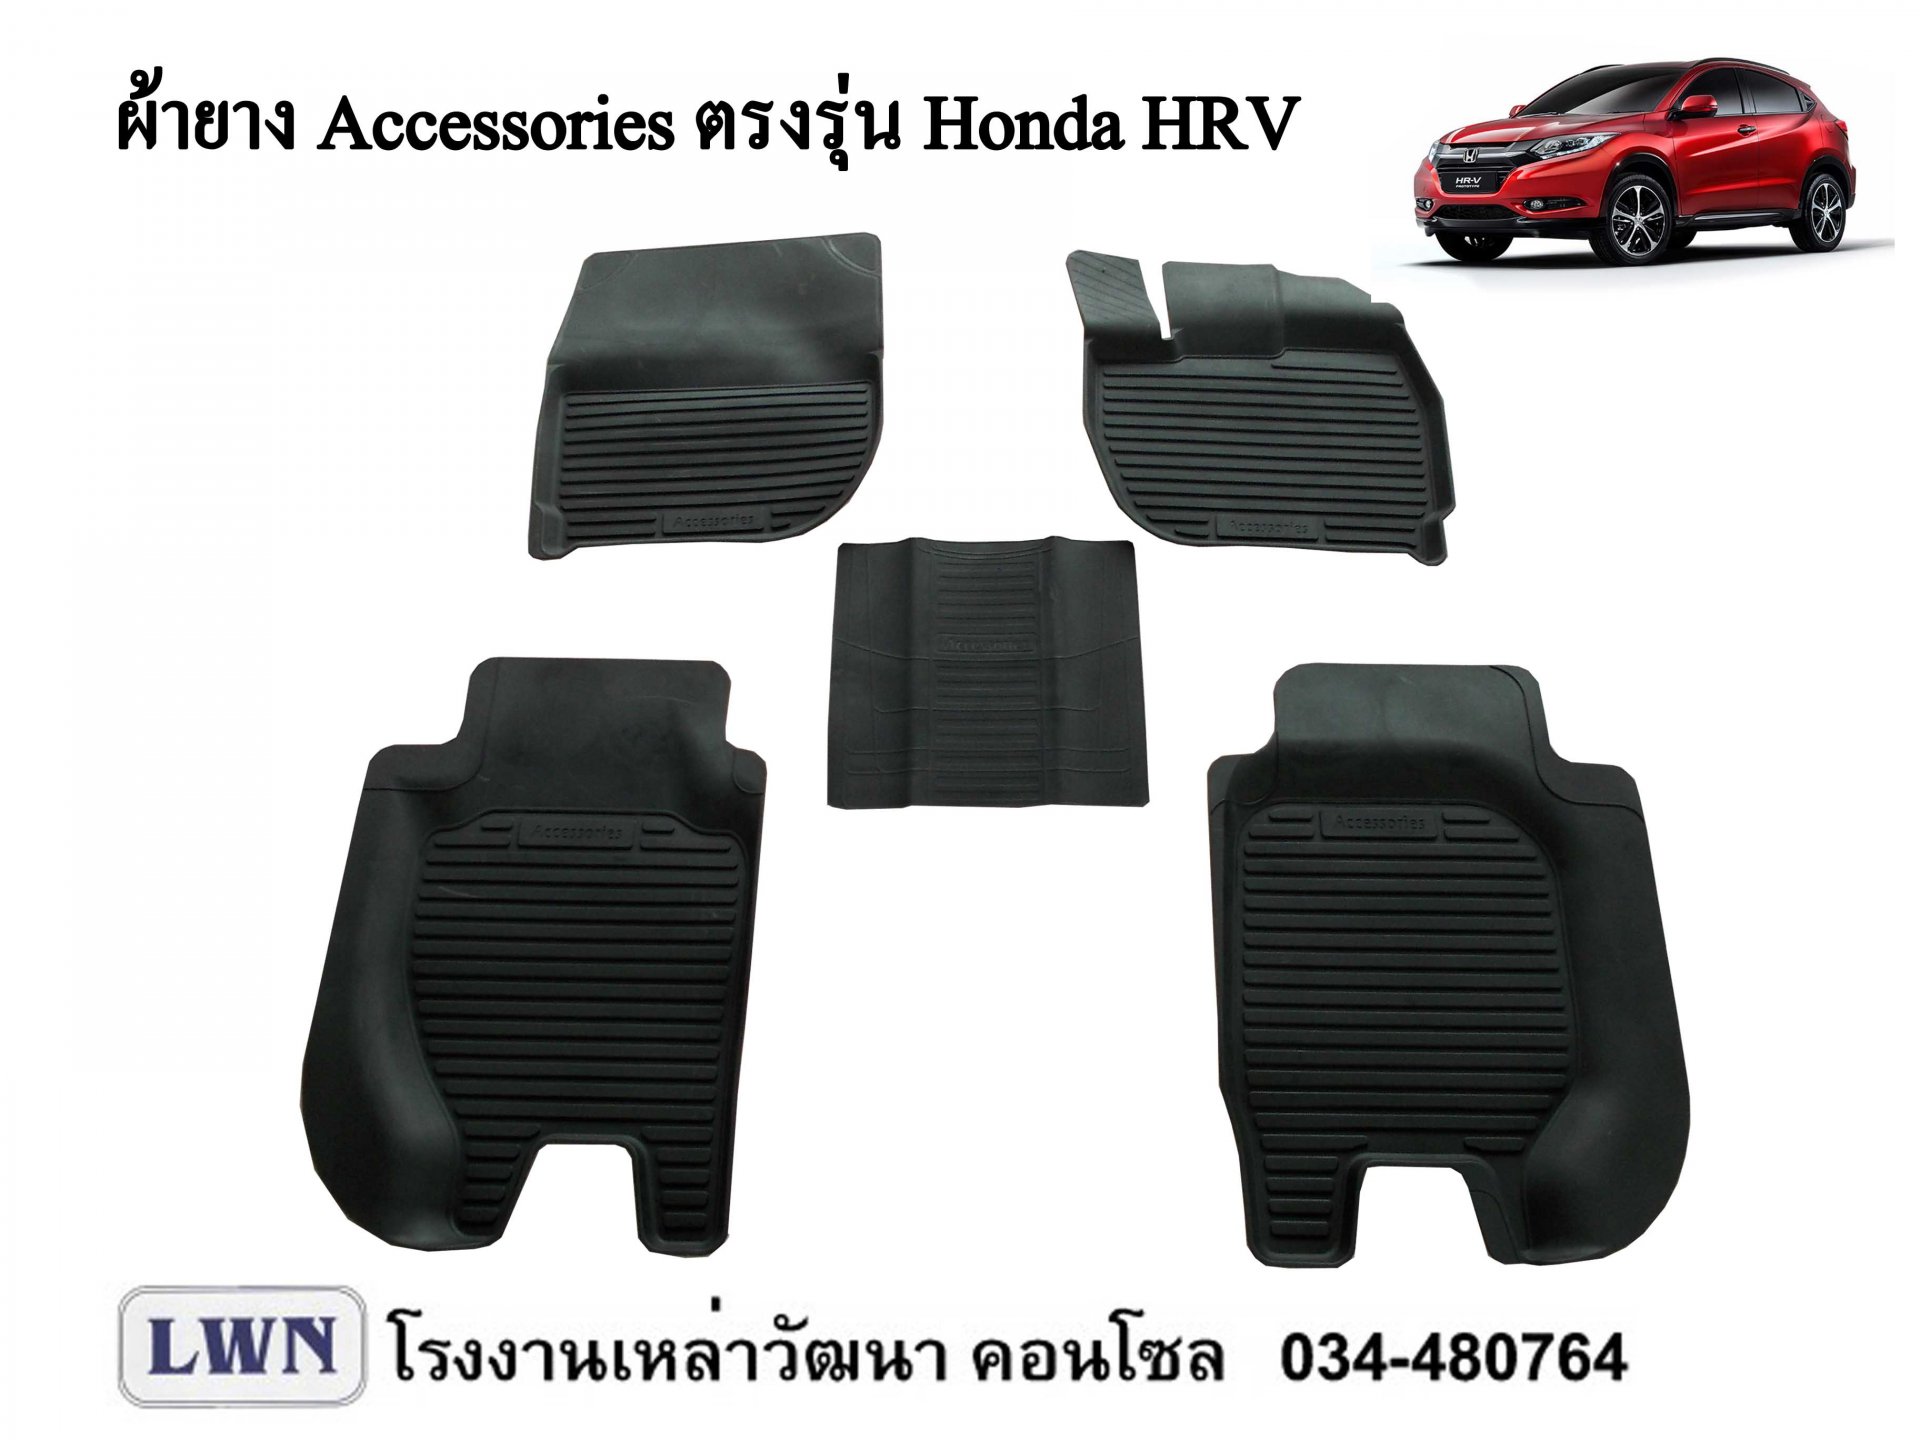 ACC-Honda HRV